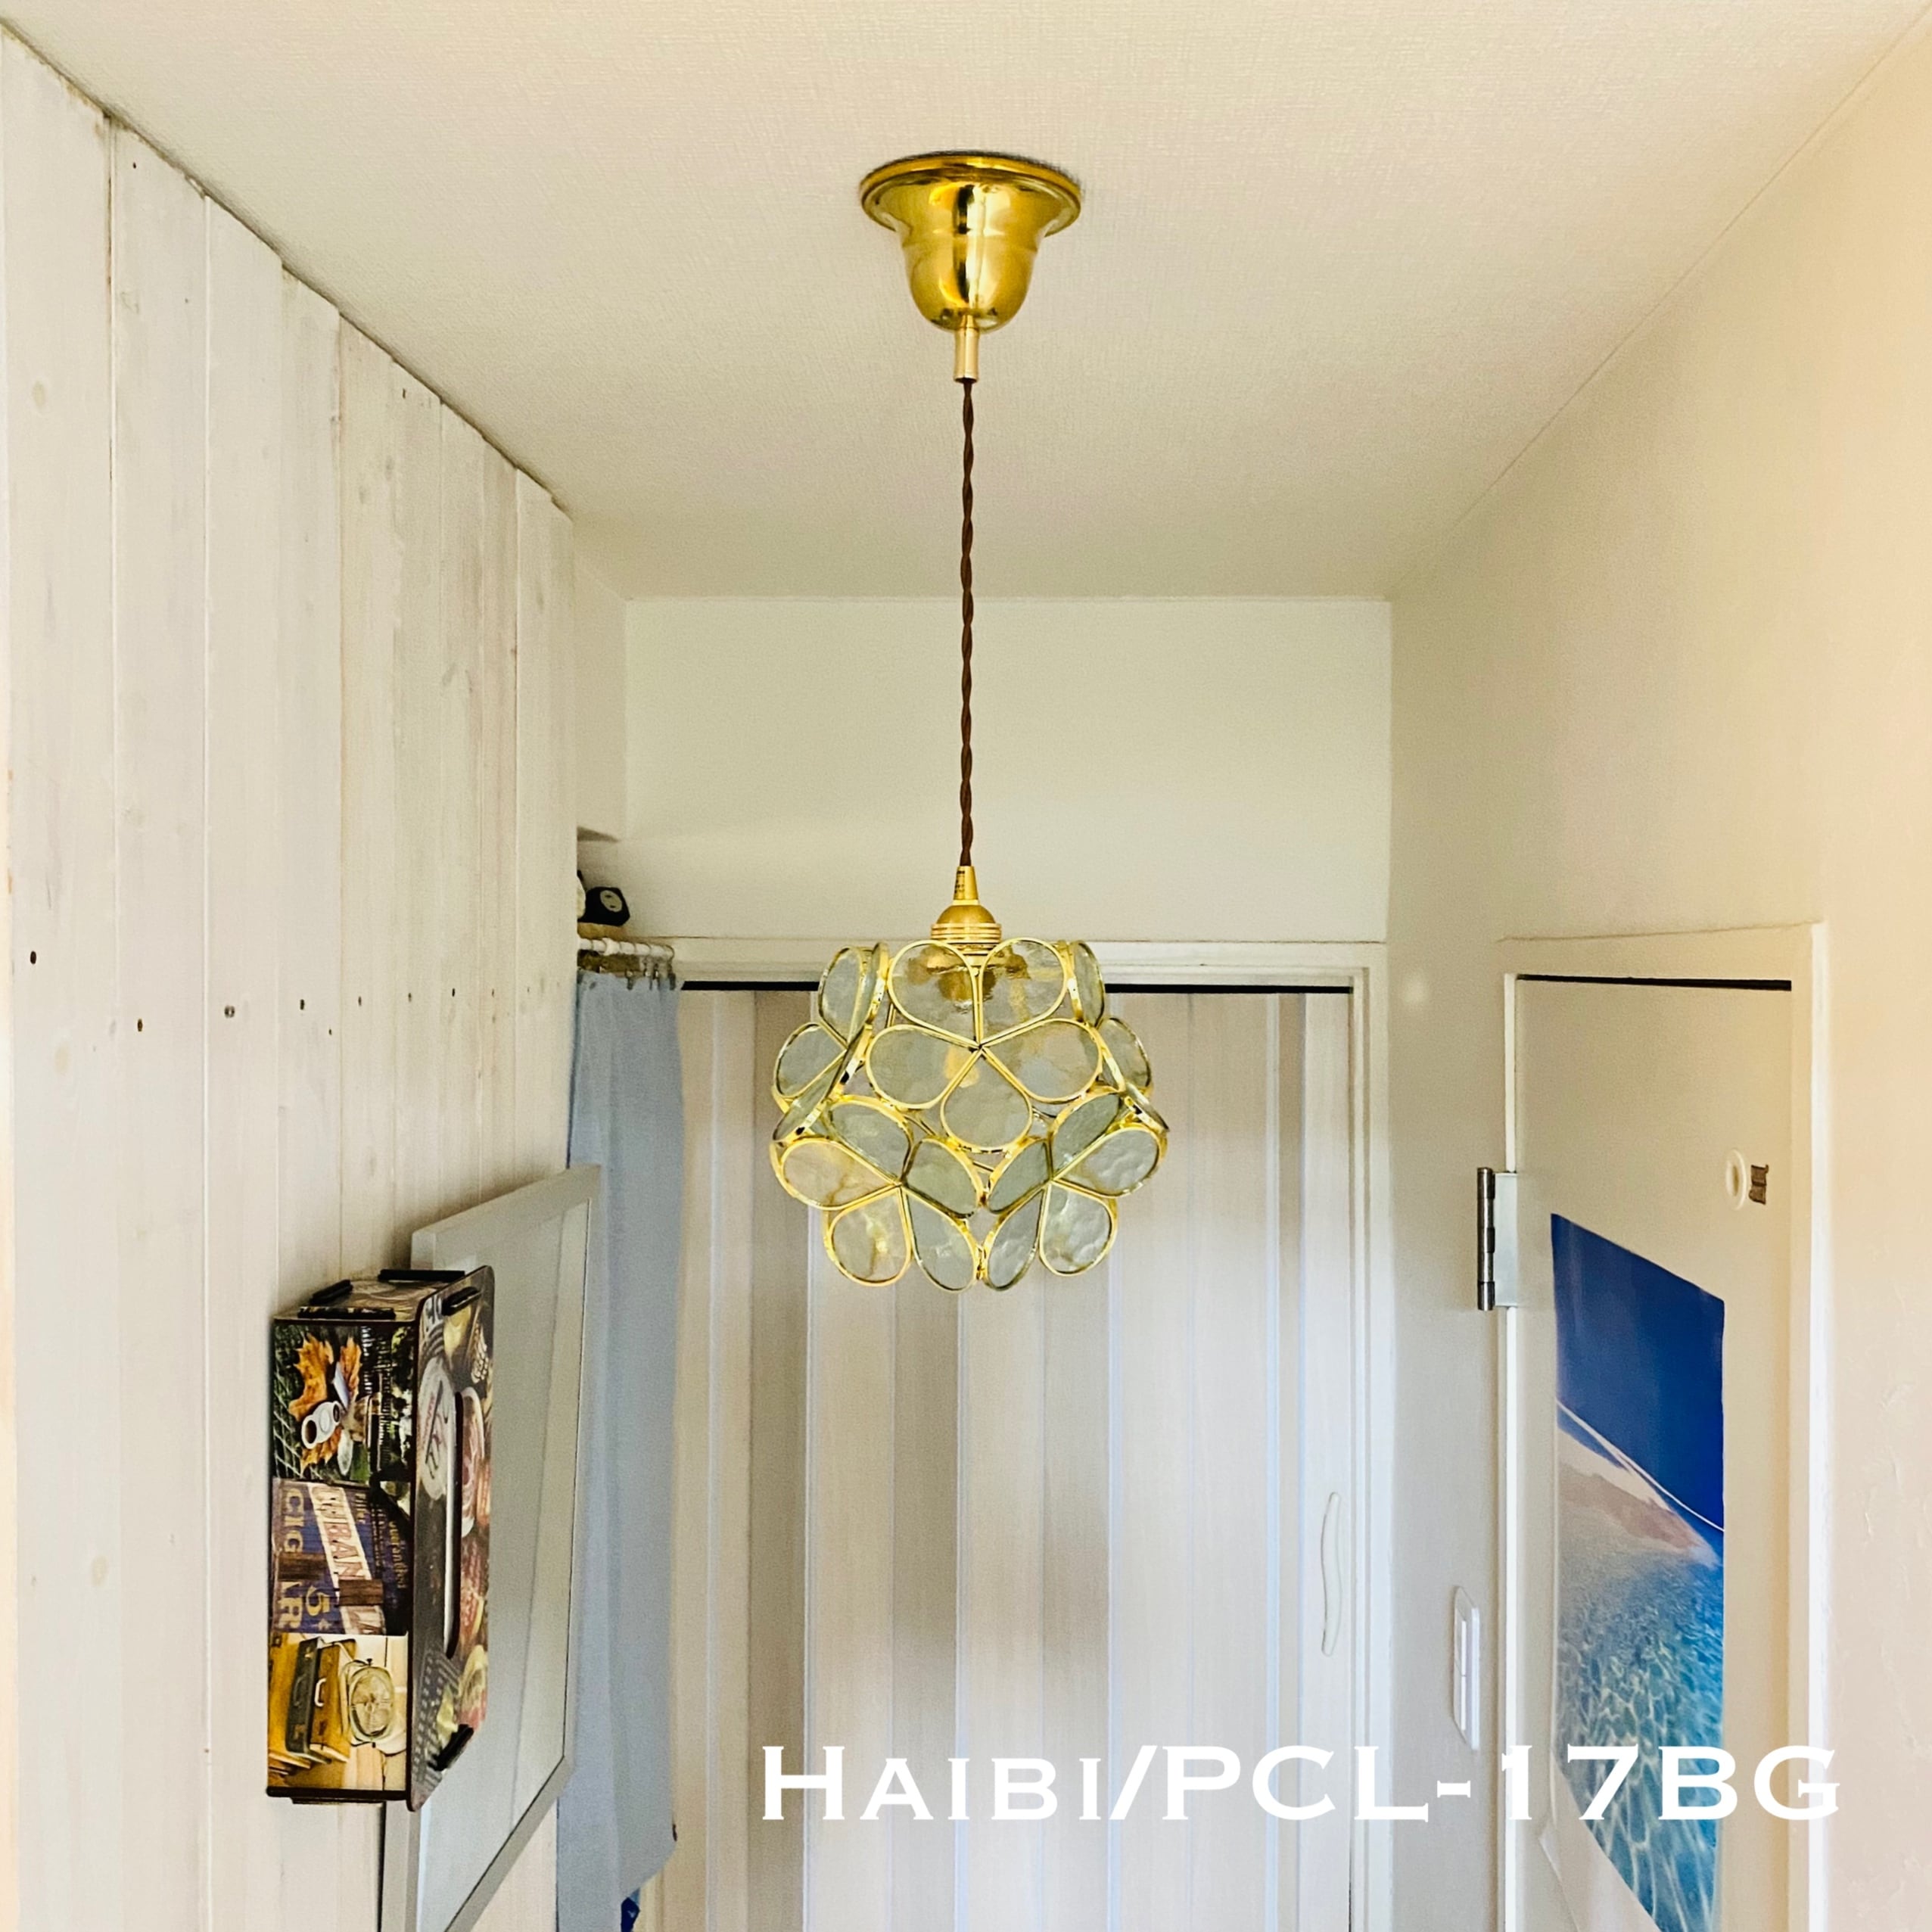 照明 ペンダントライト Haibi/PCL17BG ハイビ カットガラス ランプ